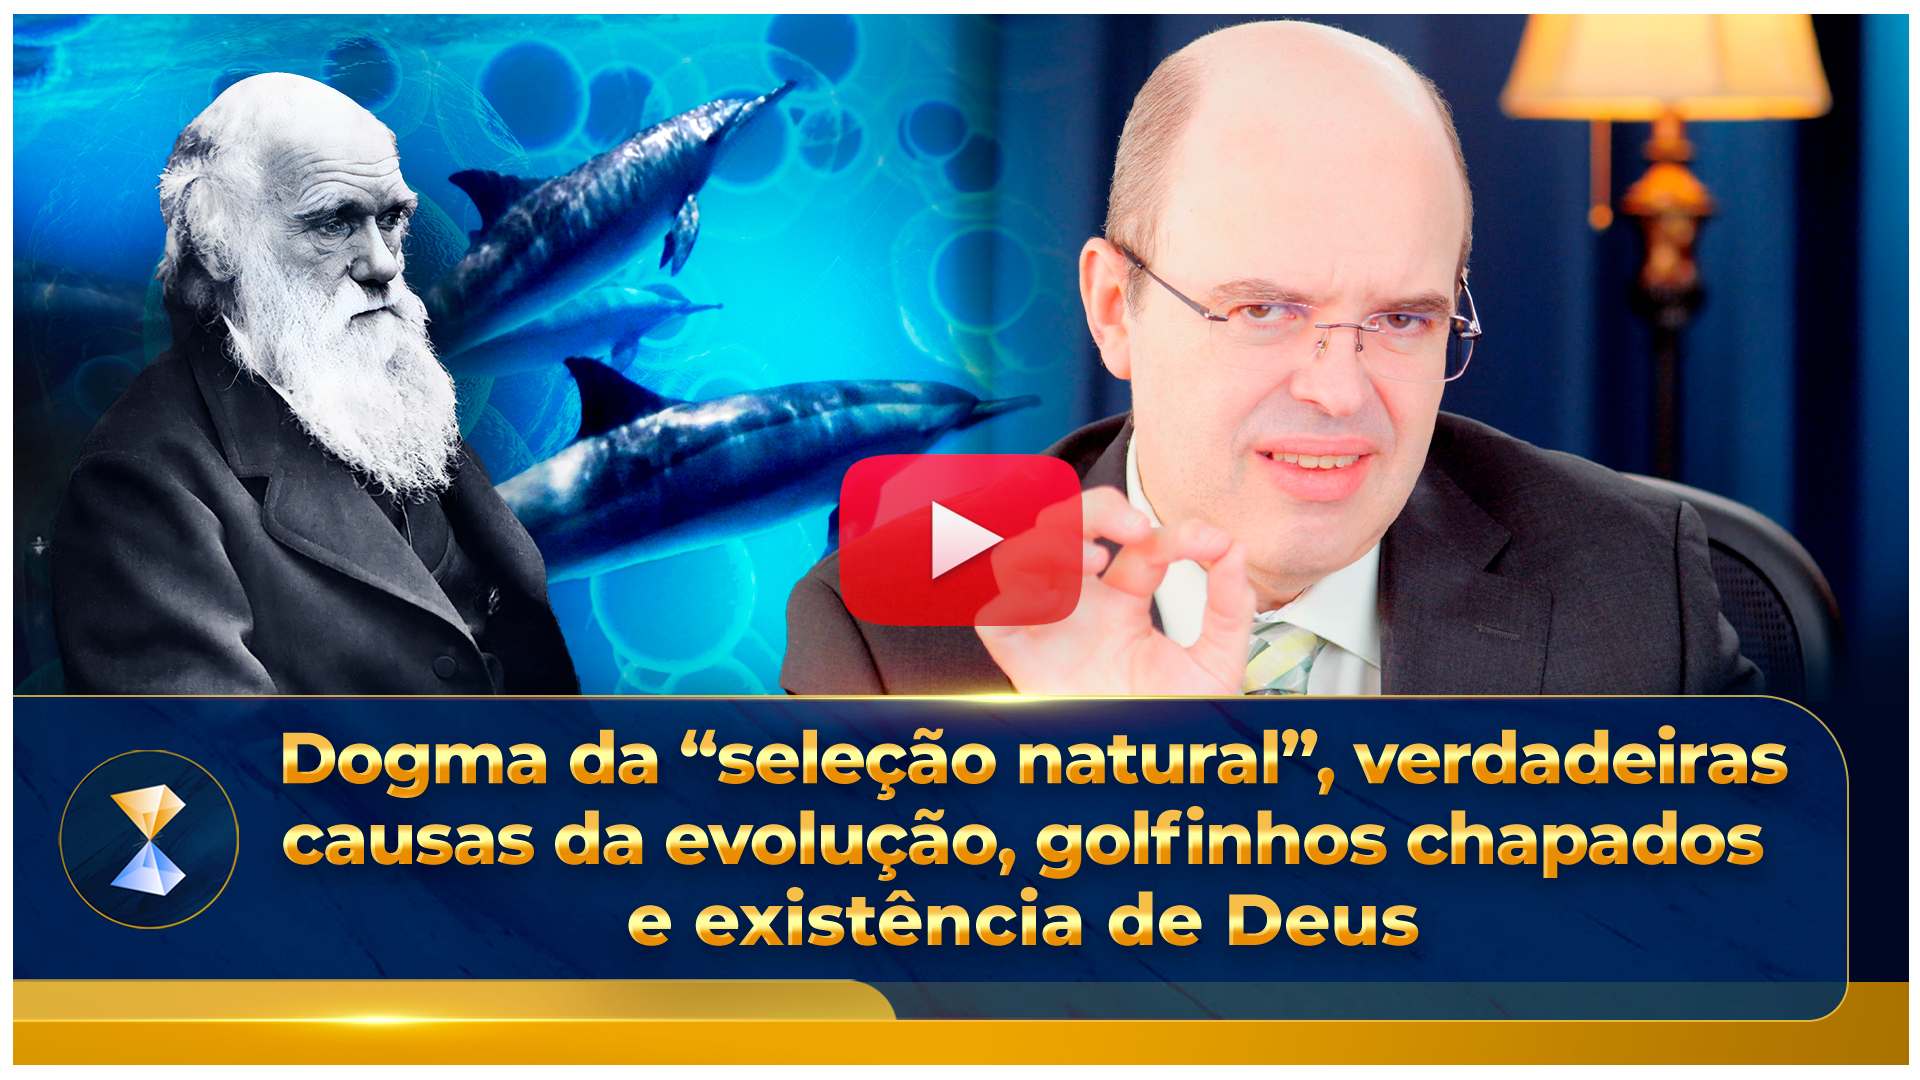 Dogma da "seleção natural", verdadeiras causas da evolução, golfinhos chapados e existência de Deus